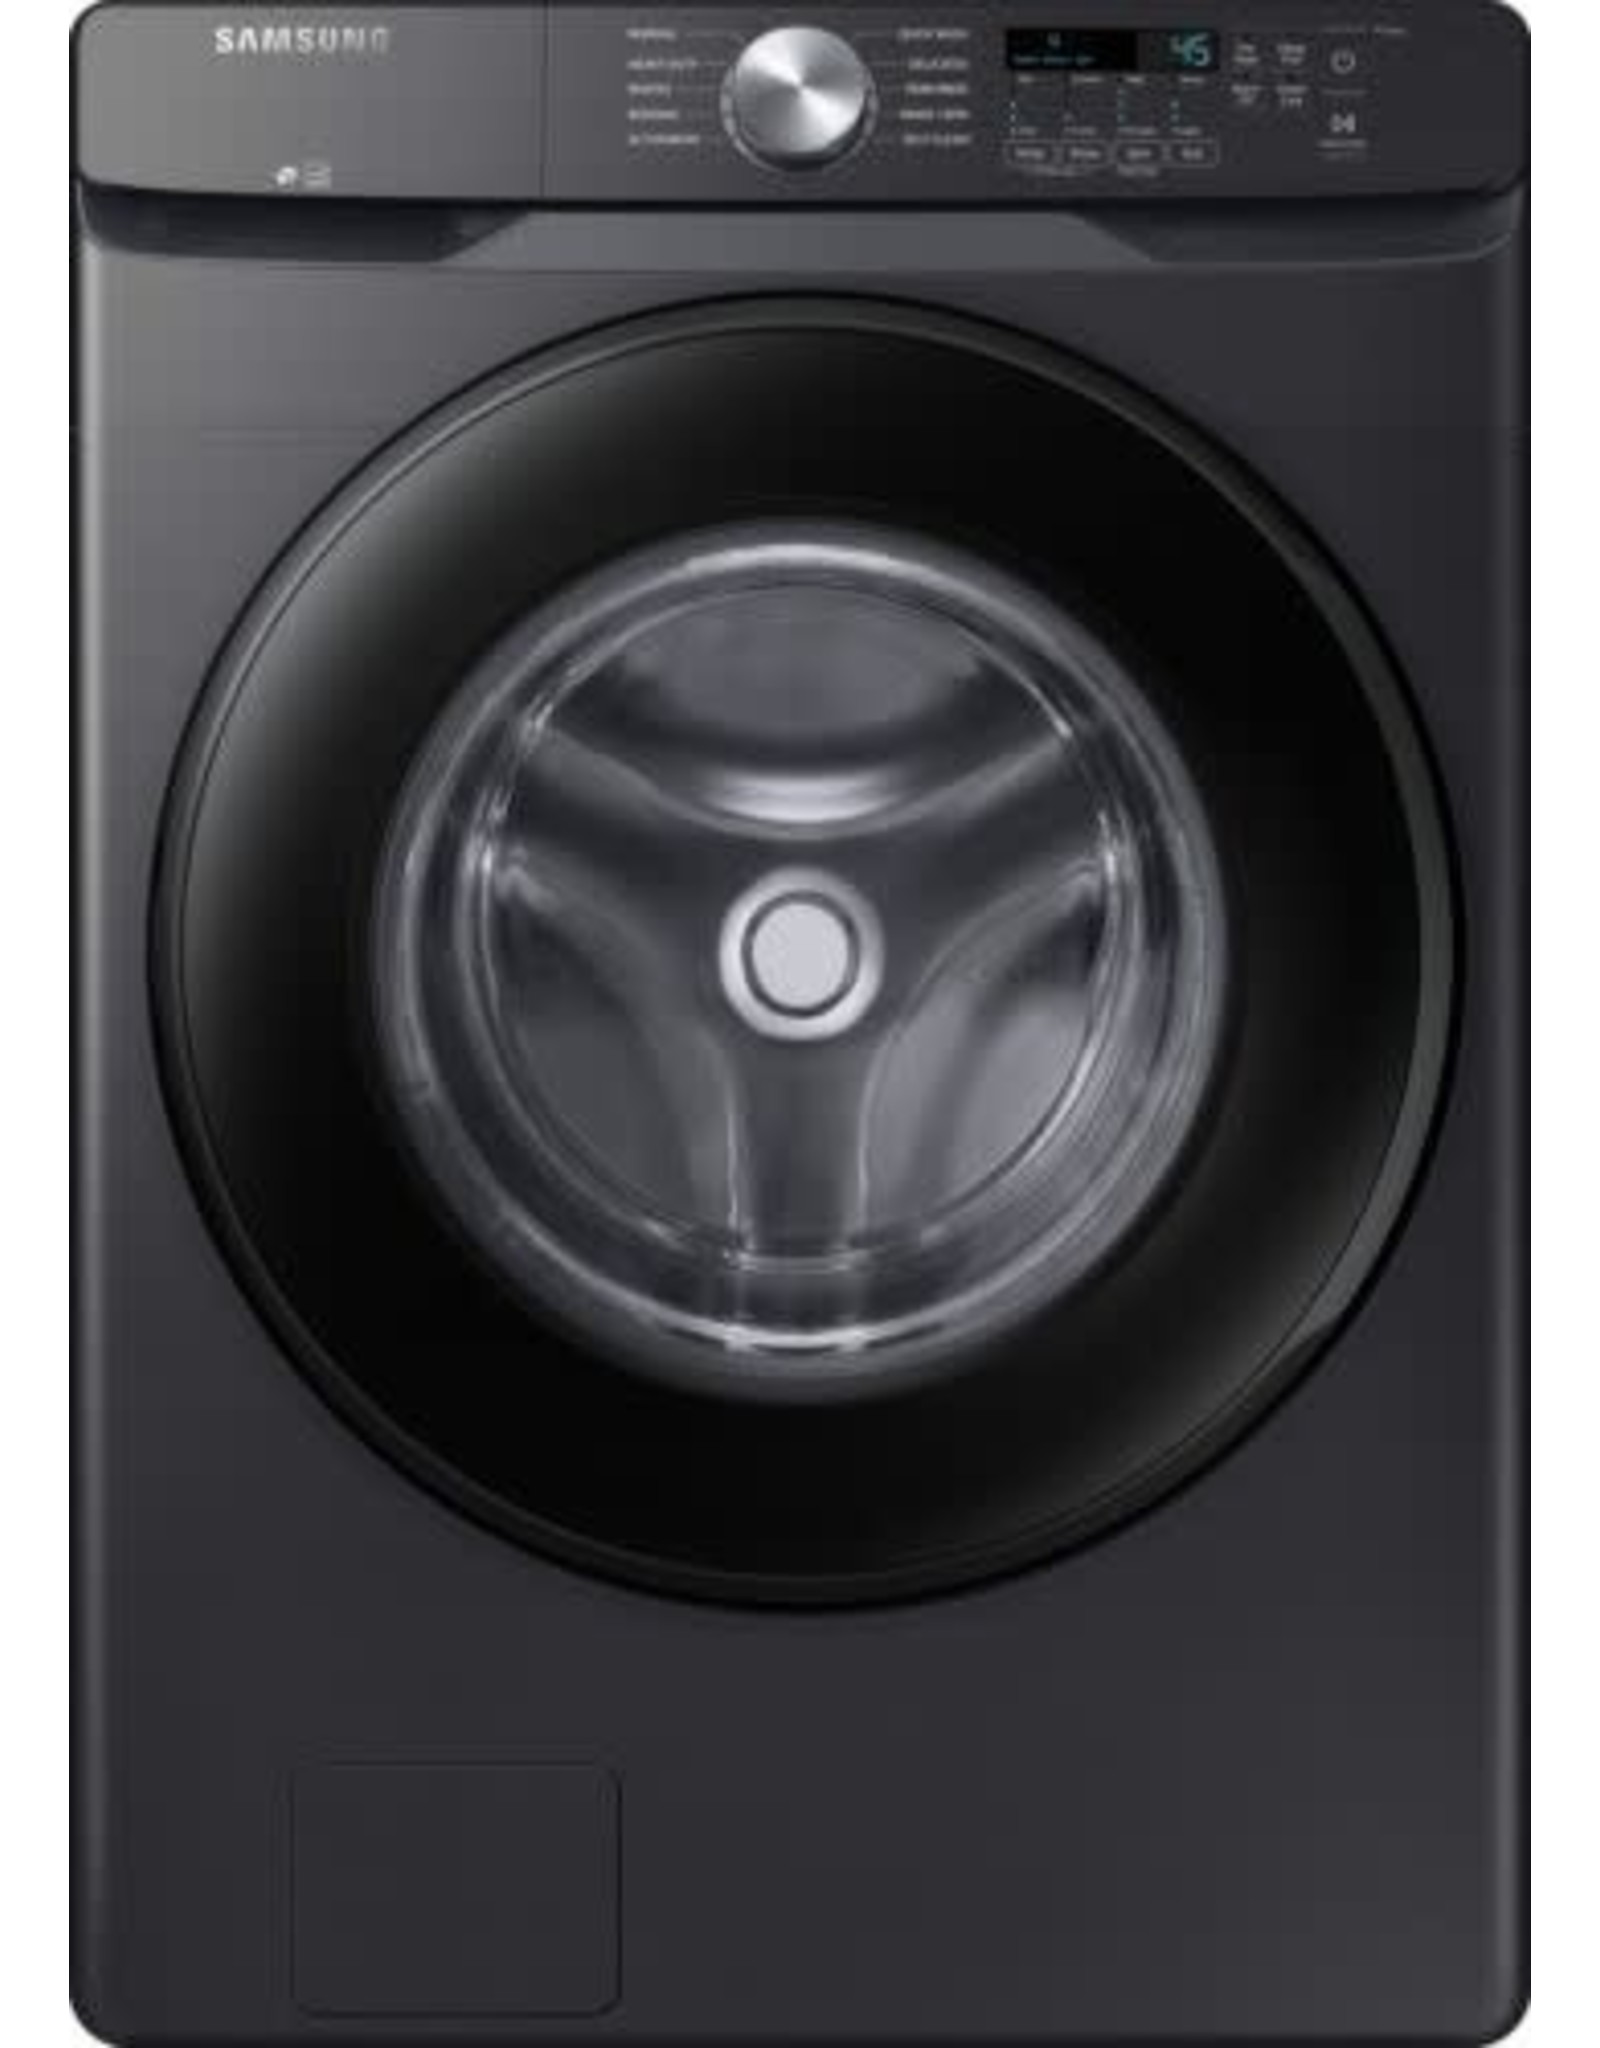 SAMSUNG DVE45T6000V 7.5 cu. ft. Electric Dryer with Sensor Dry in Brushed Black